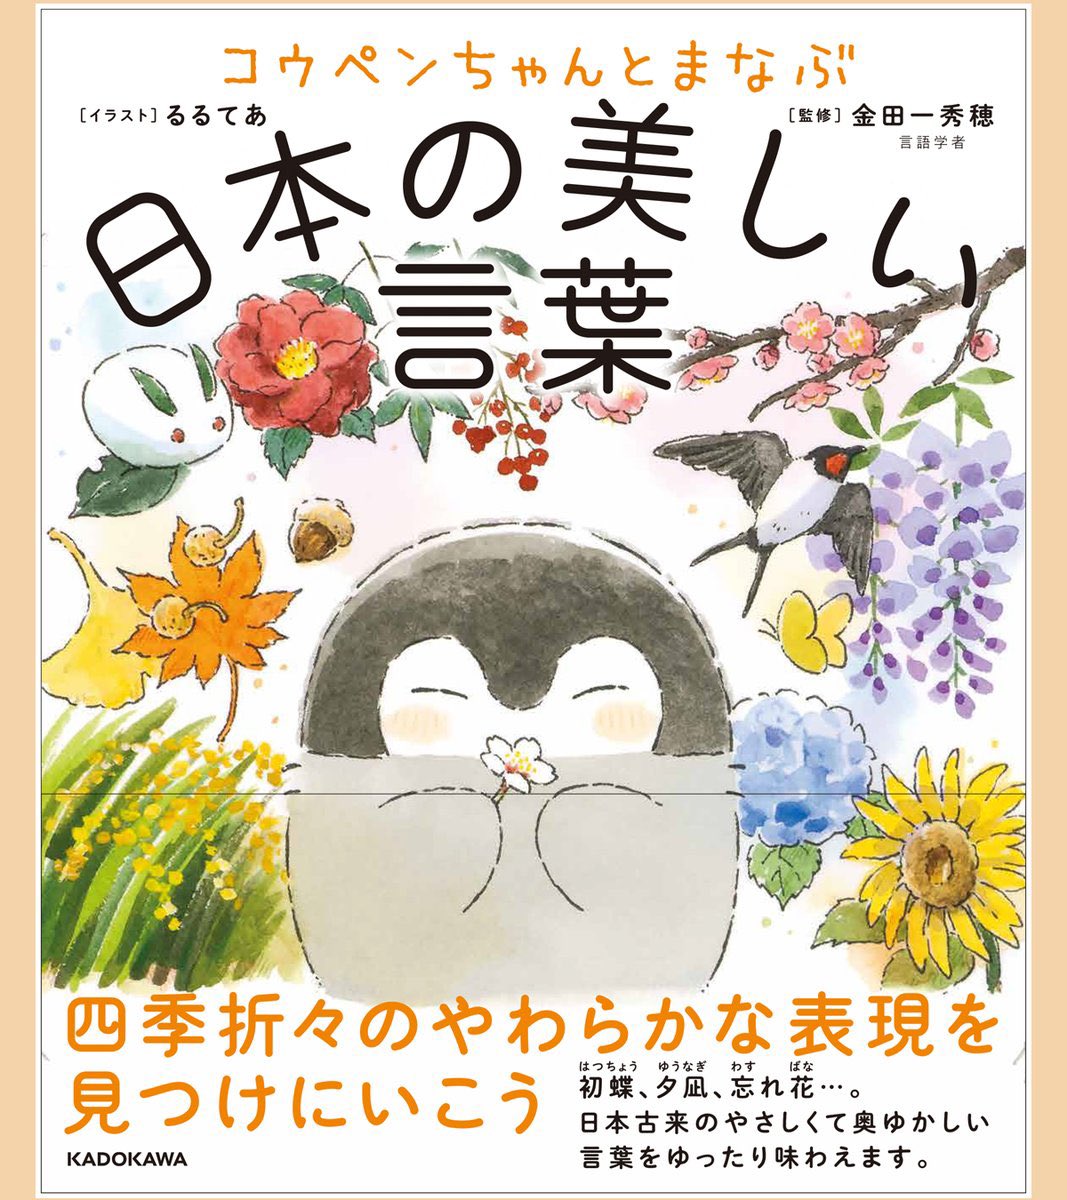 🌸新発売🌸

コウペンちゃんと四季折々の言葉を学べる本
『コウペンちゃんとまなぶ日本の美しい言葉』が発売いたしました!

コウペンちゃんたちによる挿絵もたくさんありますのでぜひ🍀
▷https://t.co/OCK9nATQaF 